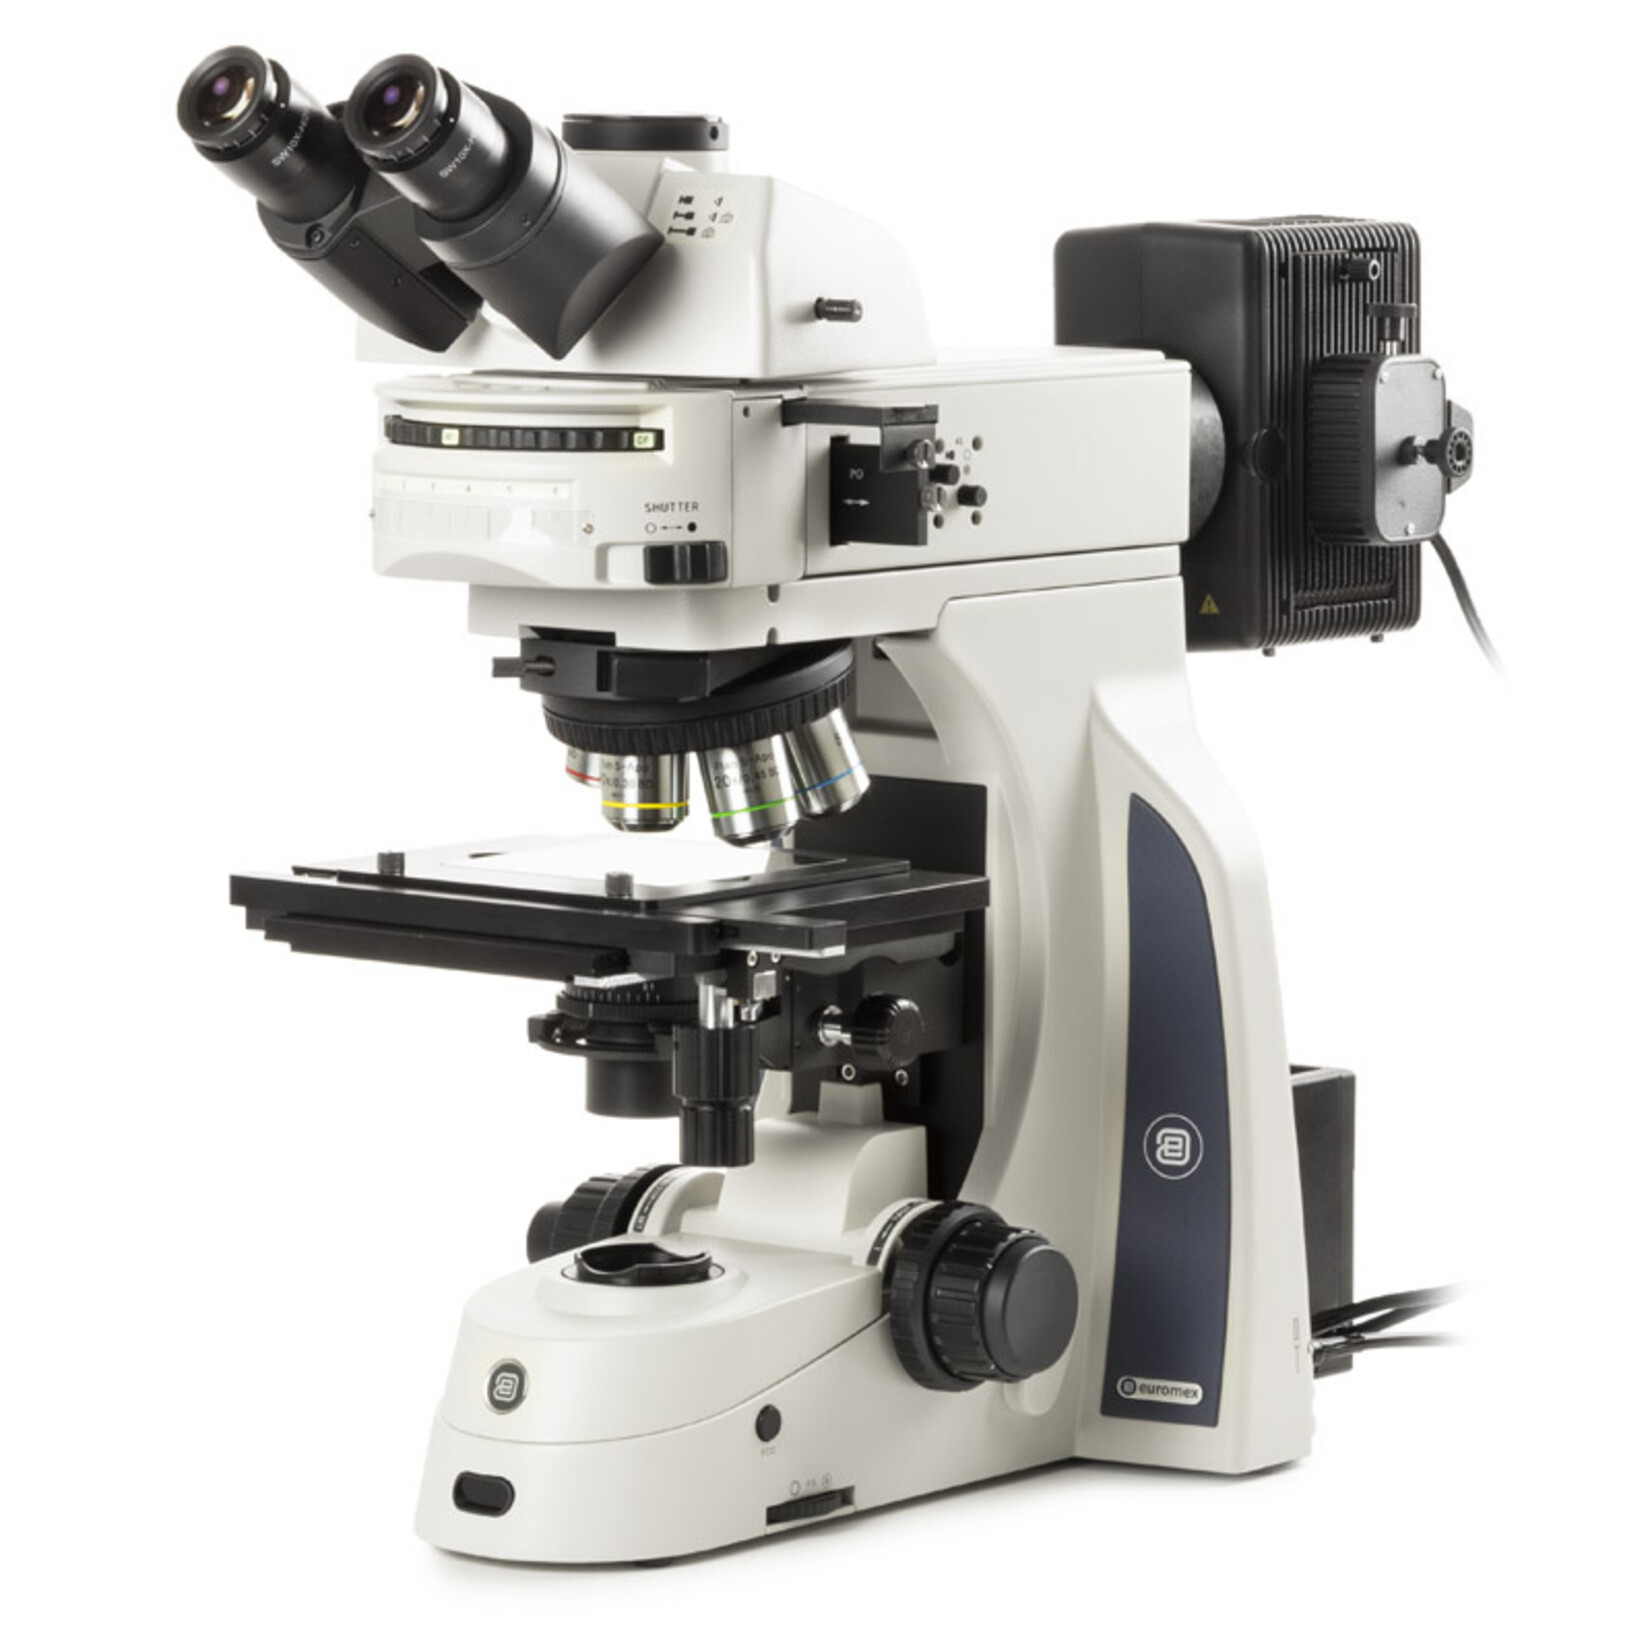 Microscópio Delphi para ensaios de materiais metalúrgicos